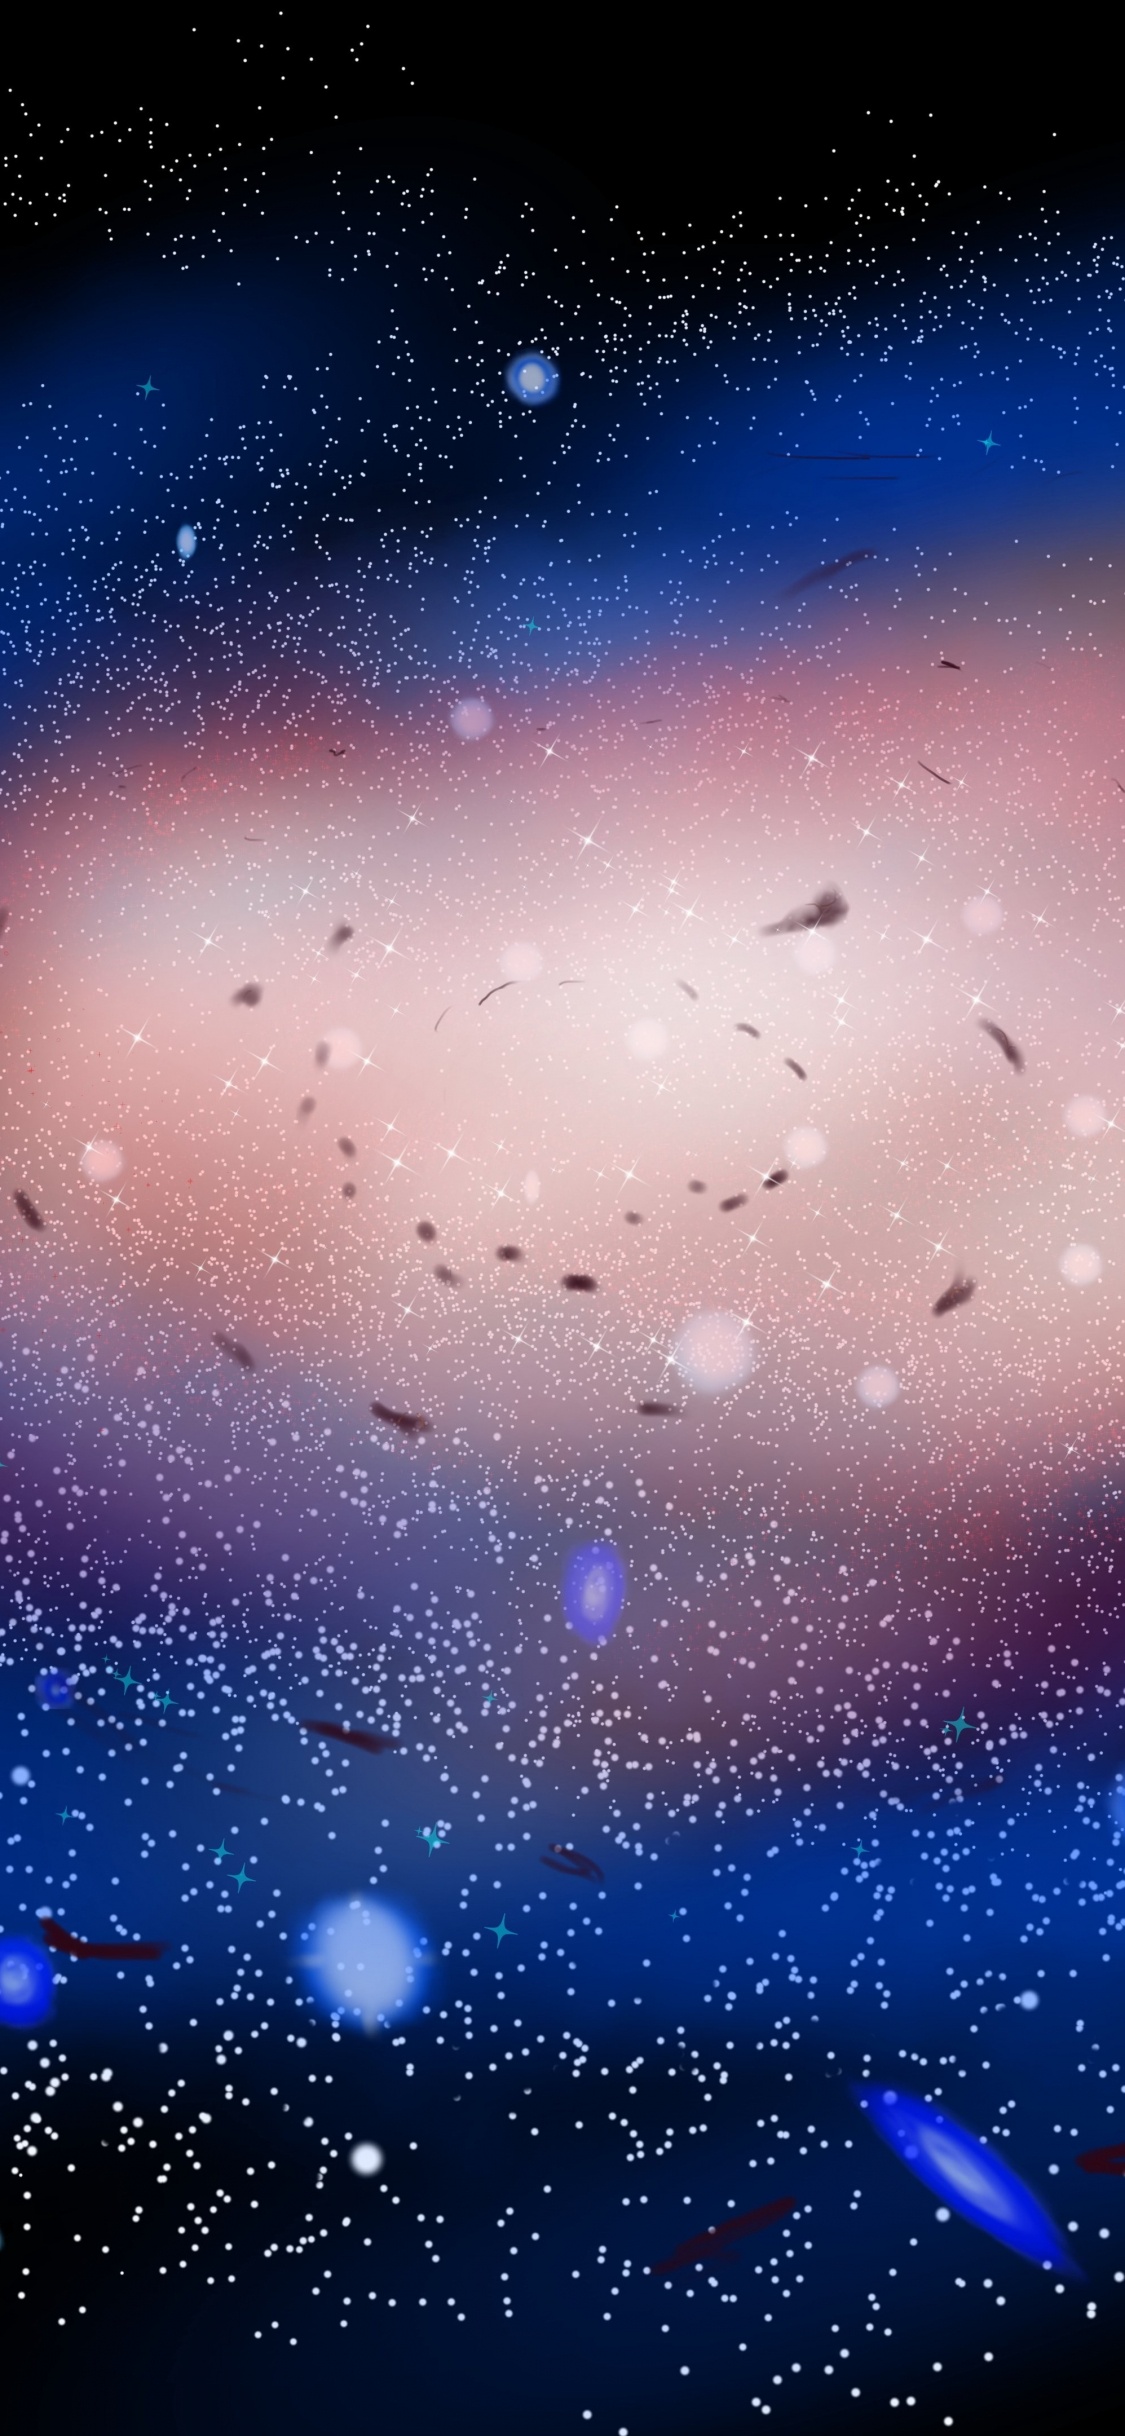 Blaue Und Weiße Sterne am Himmel. Wallpaper in 1125x2436 Resolution